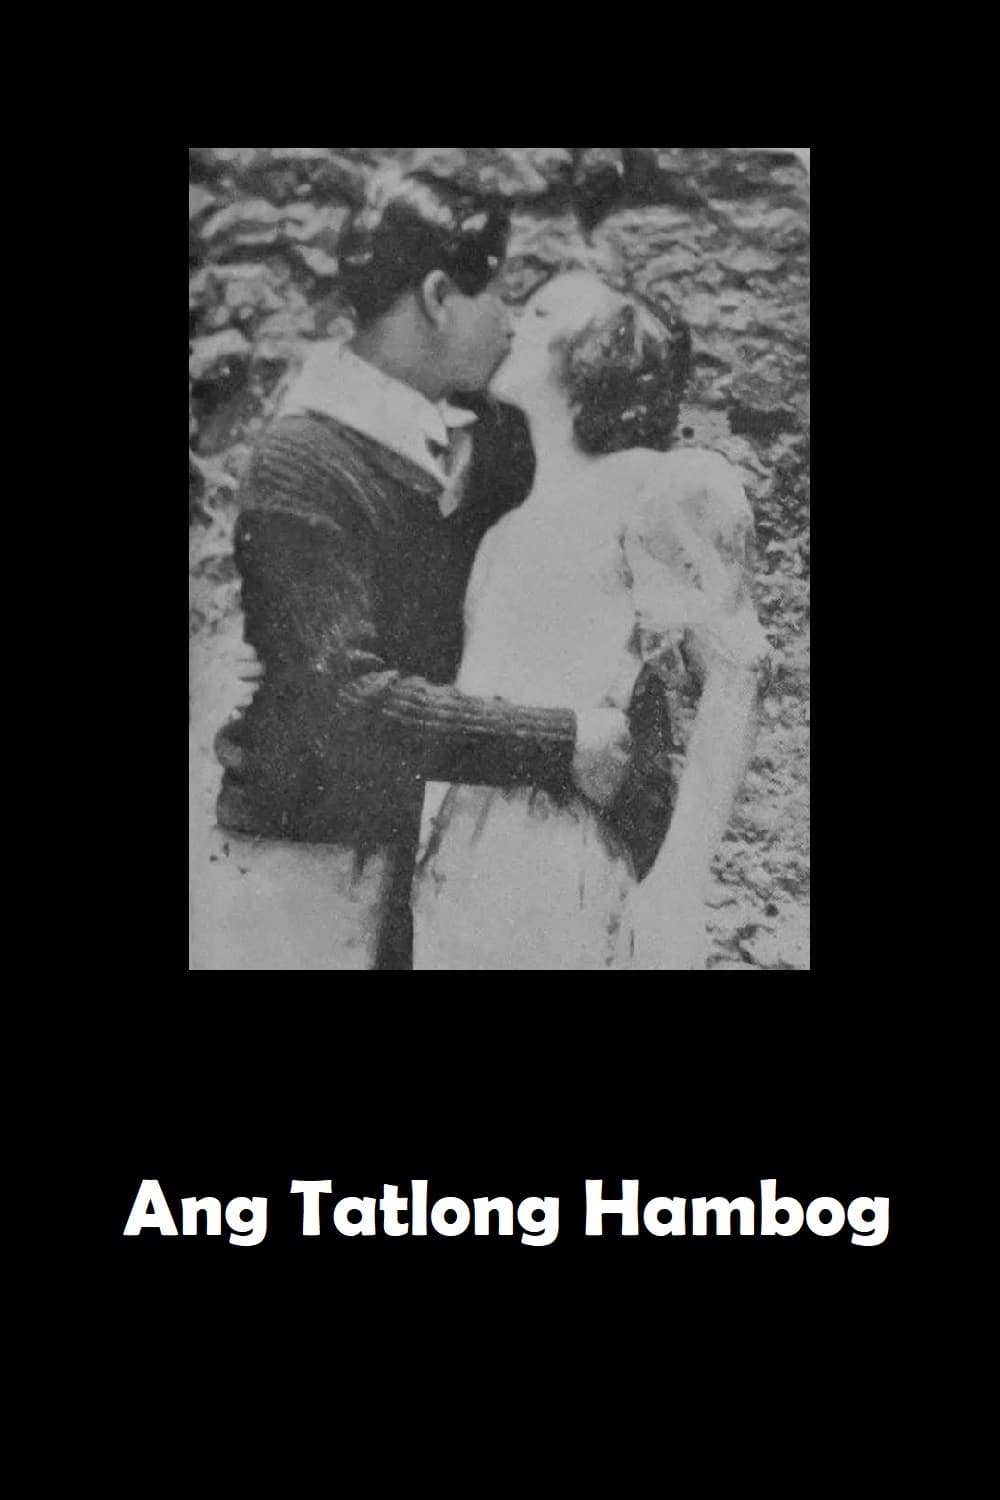 Ang Tatlong Hambog